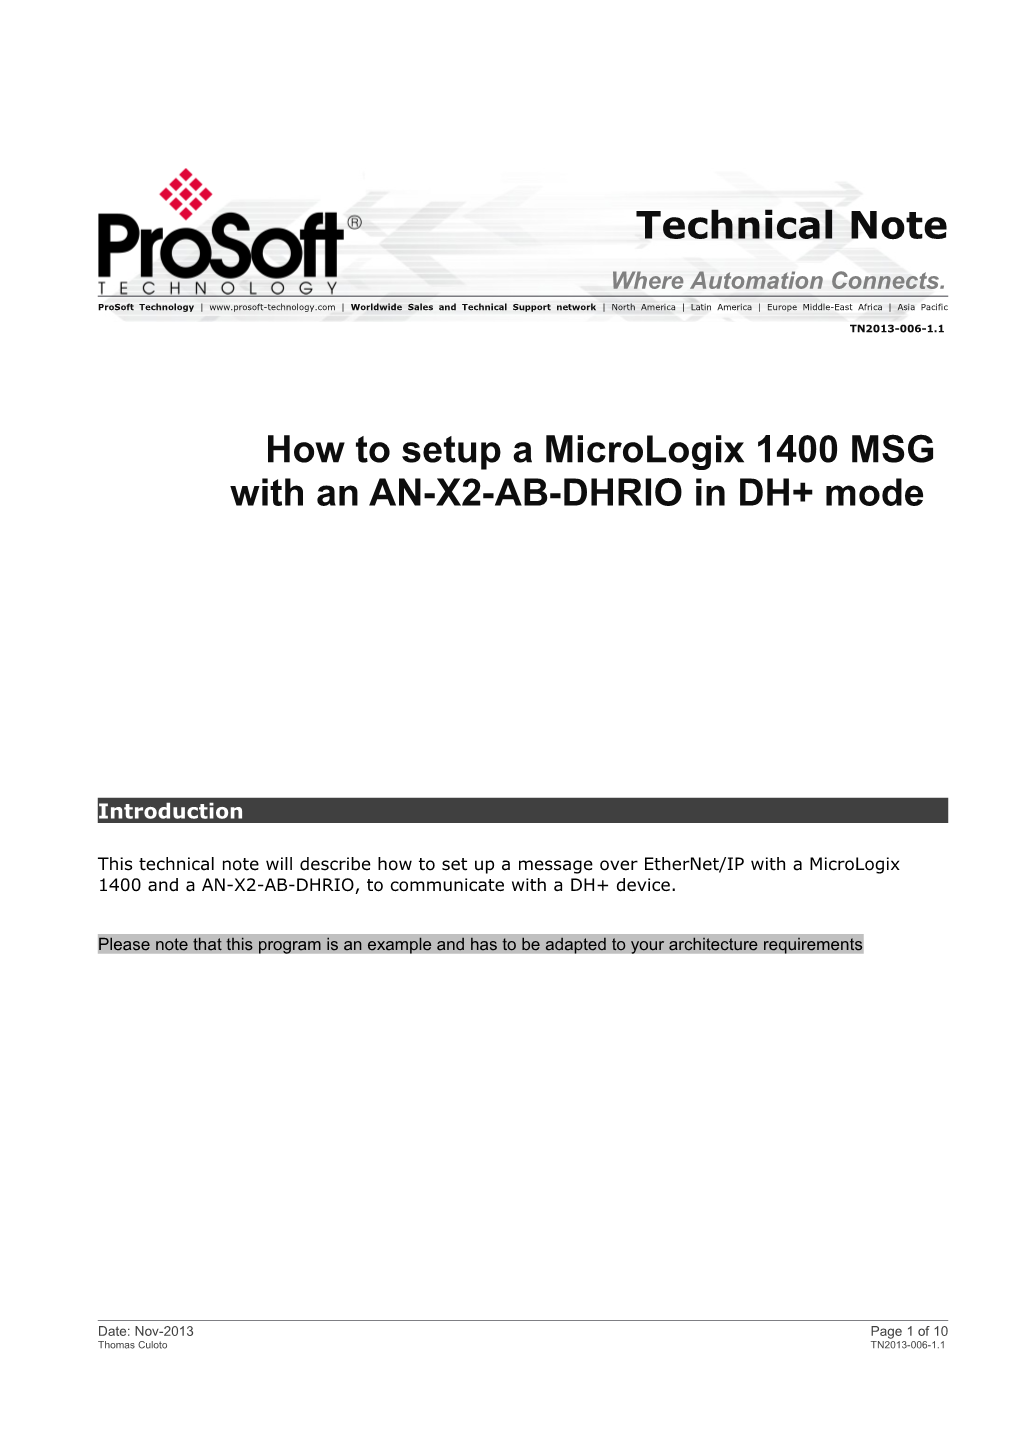 How to Setup Micrologix MSG